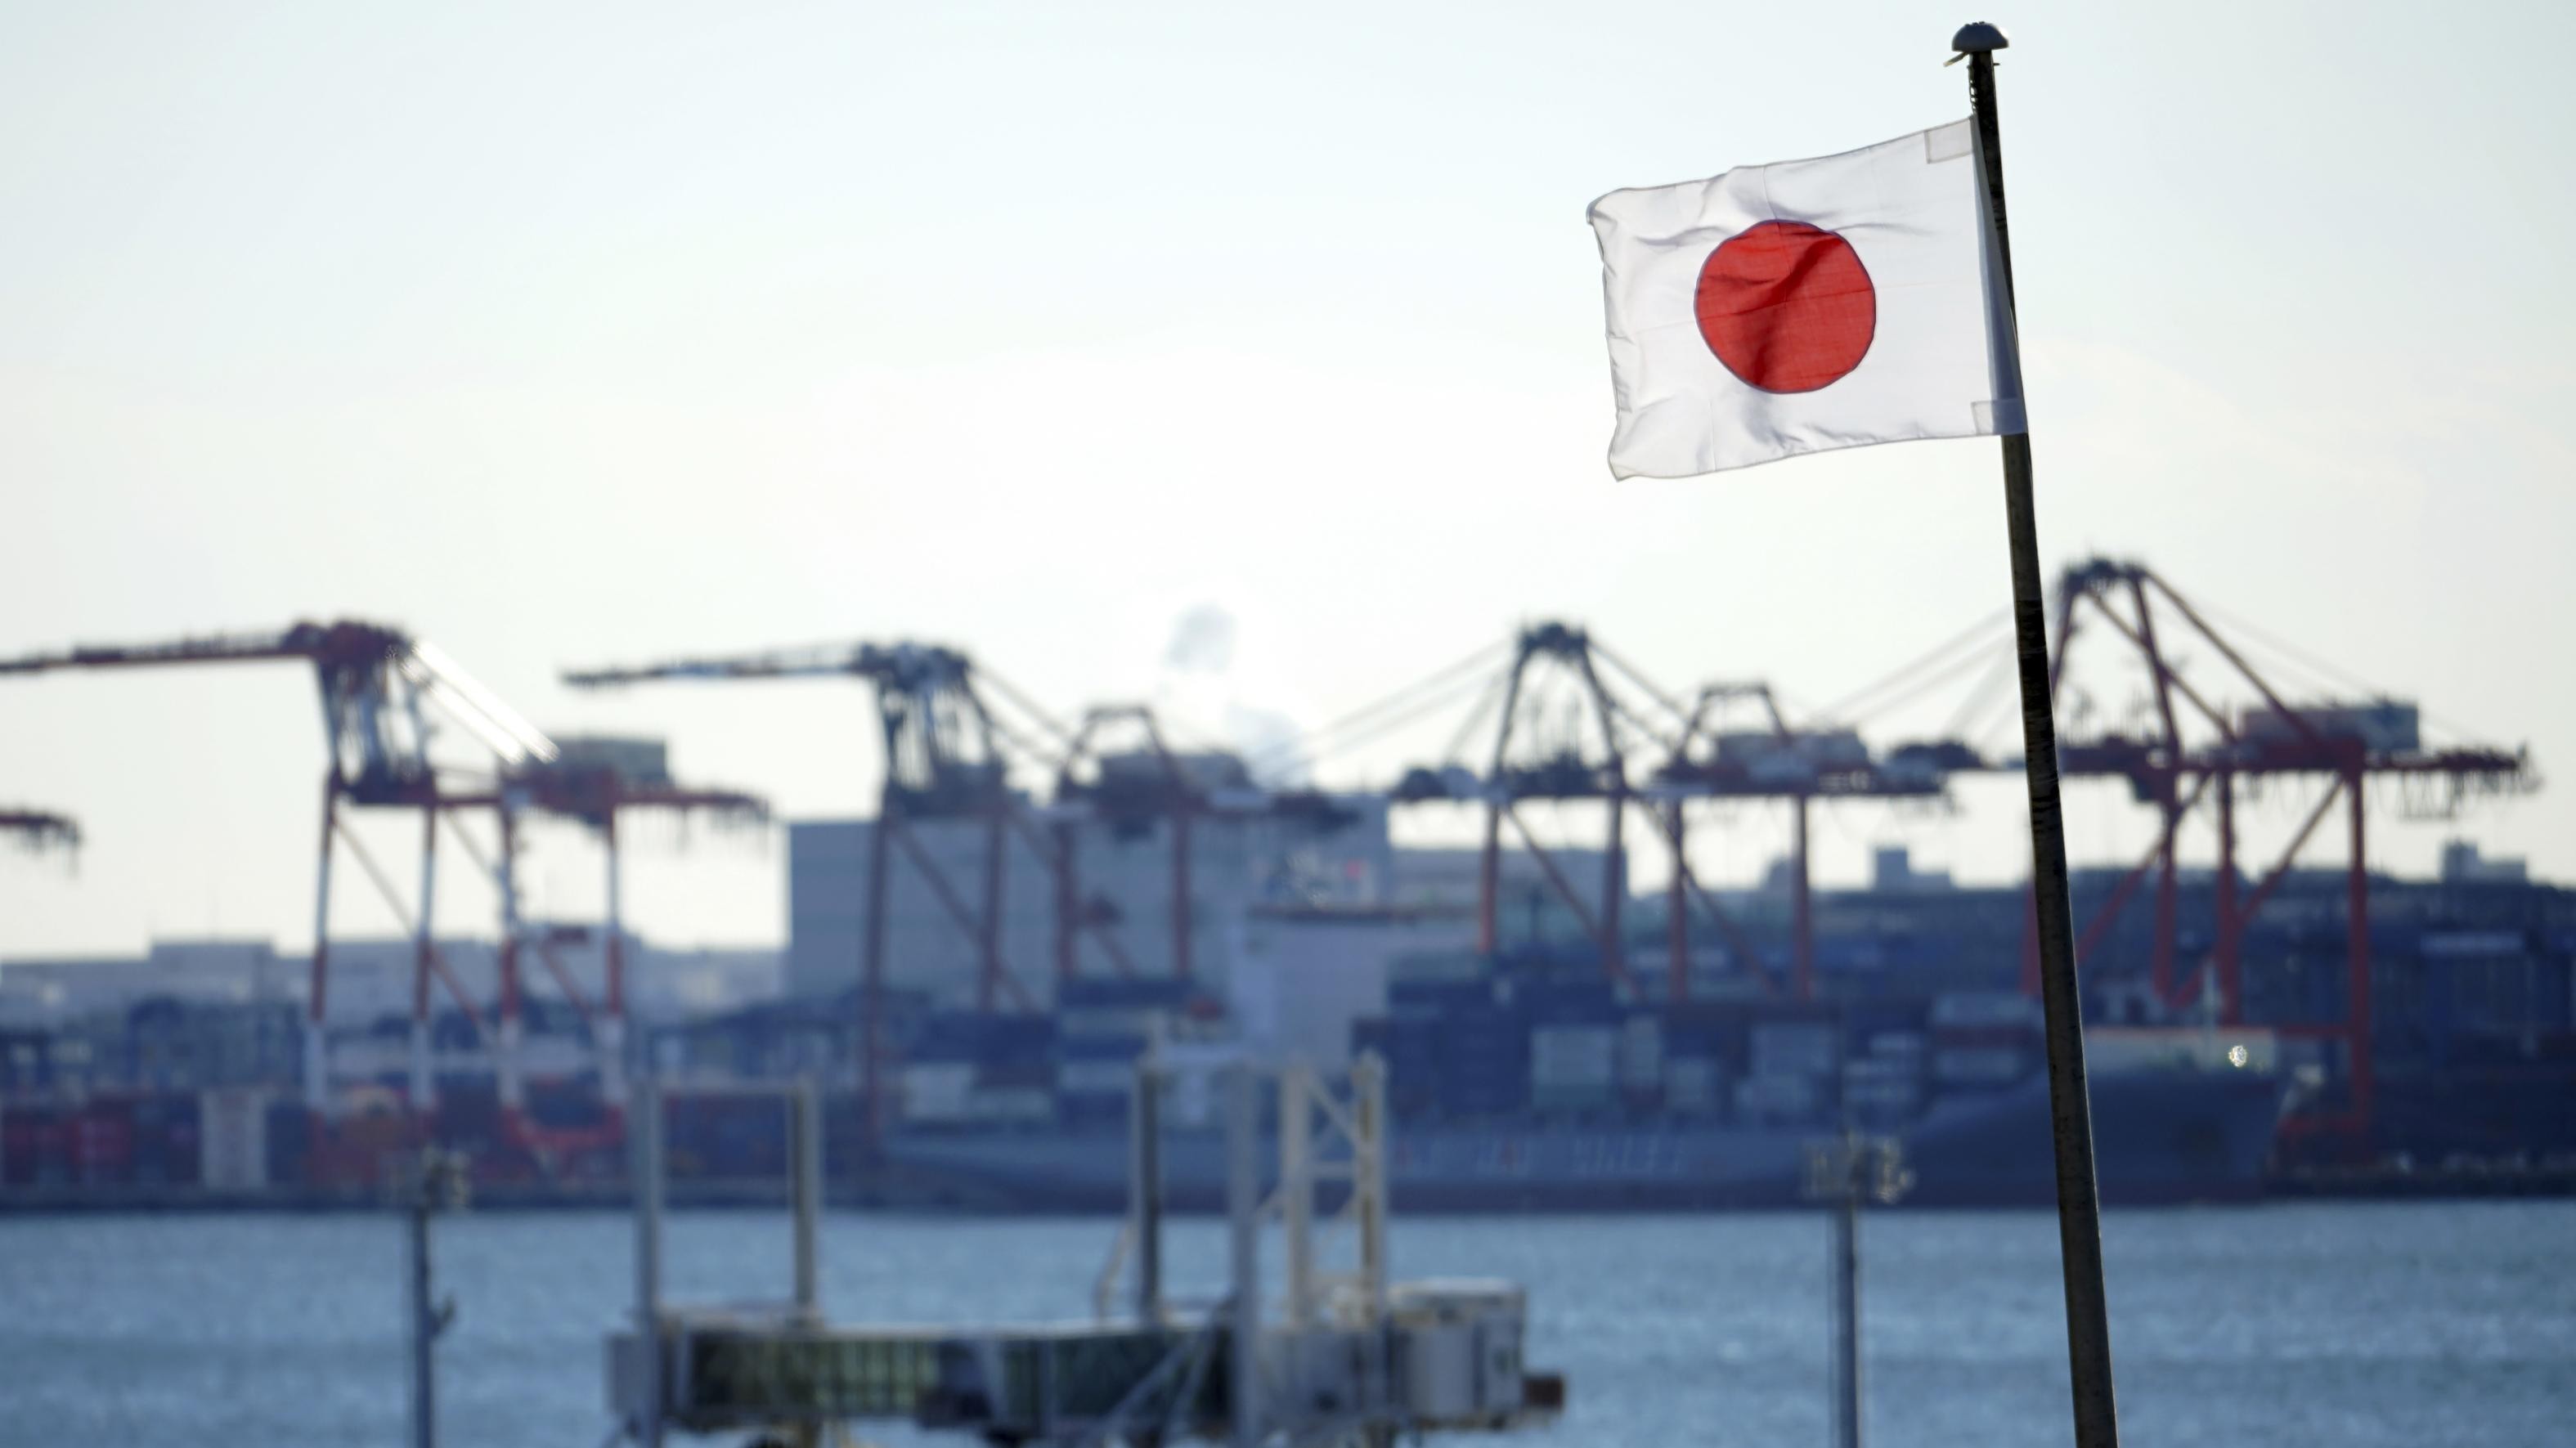 Nhật Bản tung chính sách mới vì lợi ích quốc gia bị đe dọa 'hơn bao giờ hết', Trung Quốc khẳng định thái độ